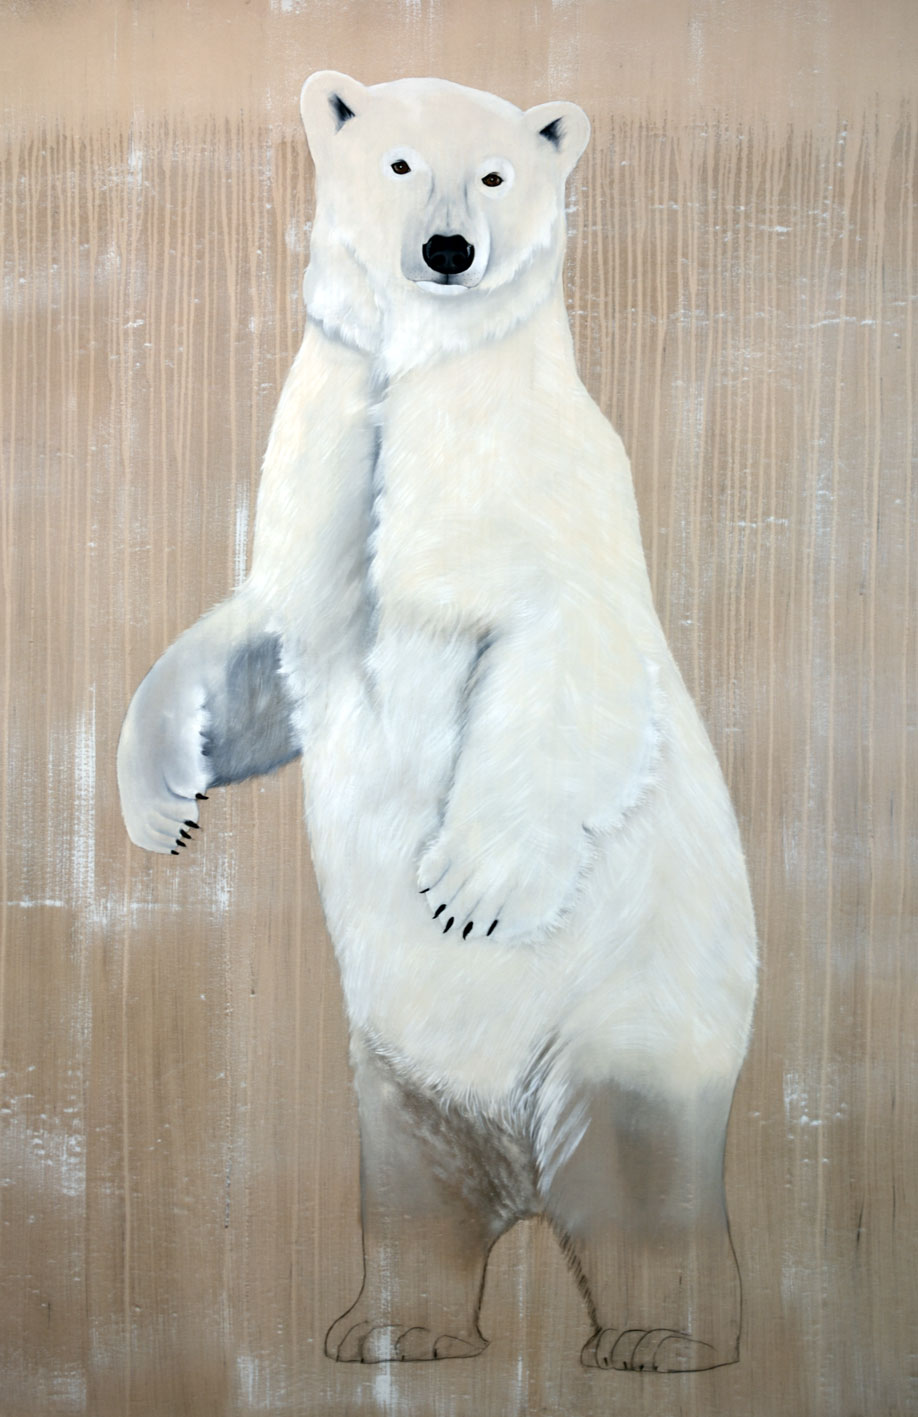 GRIMALDI FORUM MONACO ursus-maritimus-polar-bear-white-threatened-endangered-extinction Thierry Bisch Contemporary painter animals painting art  nature biodiversity conservation 